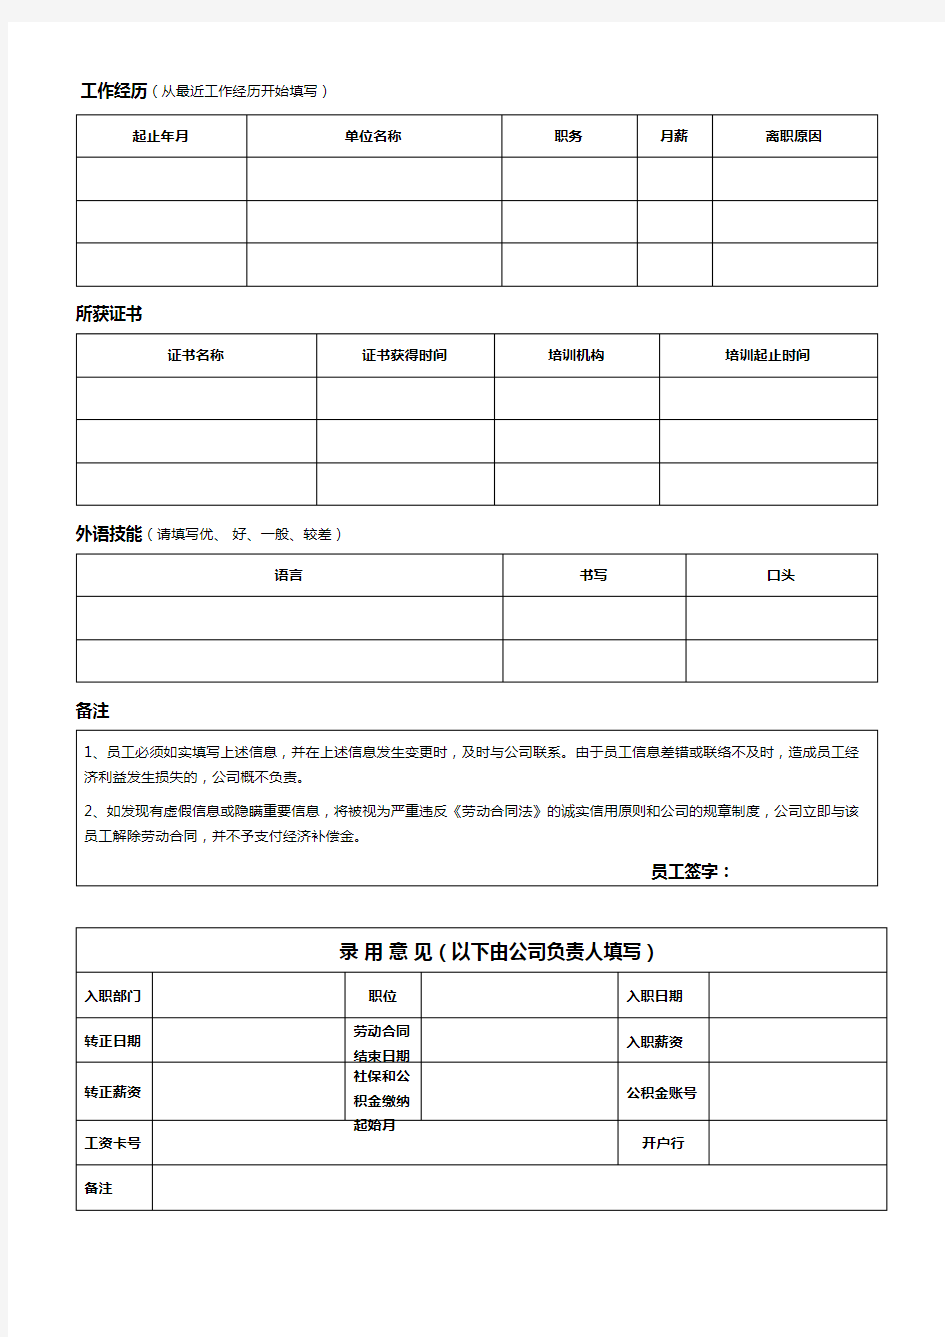 员工个人信息登记表 (1)